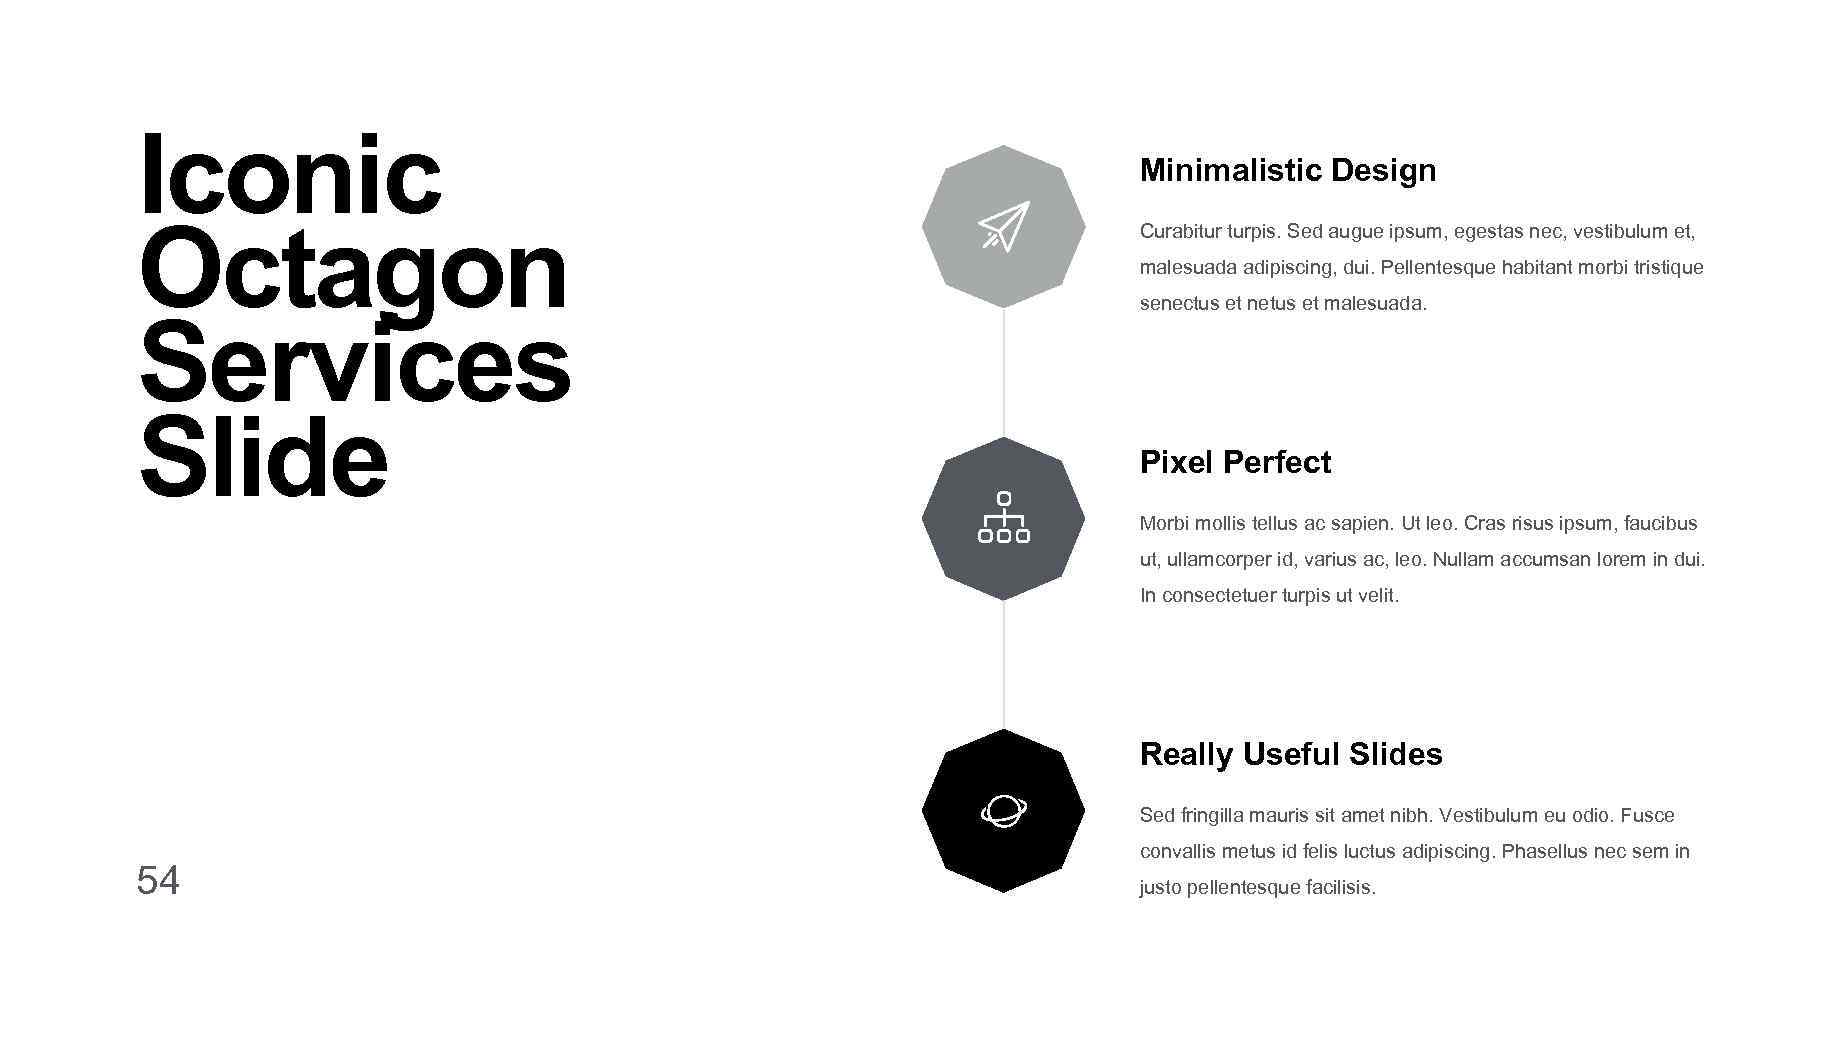 Iconic Octagon Services Slide Minimalistic Design Curabitur turpis. Sed augue ipsum, egestas nec, vestibulum